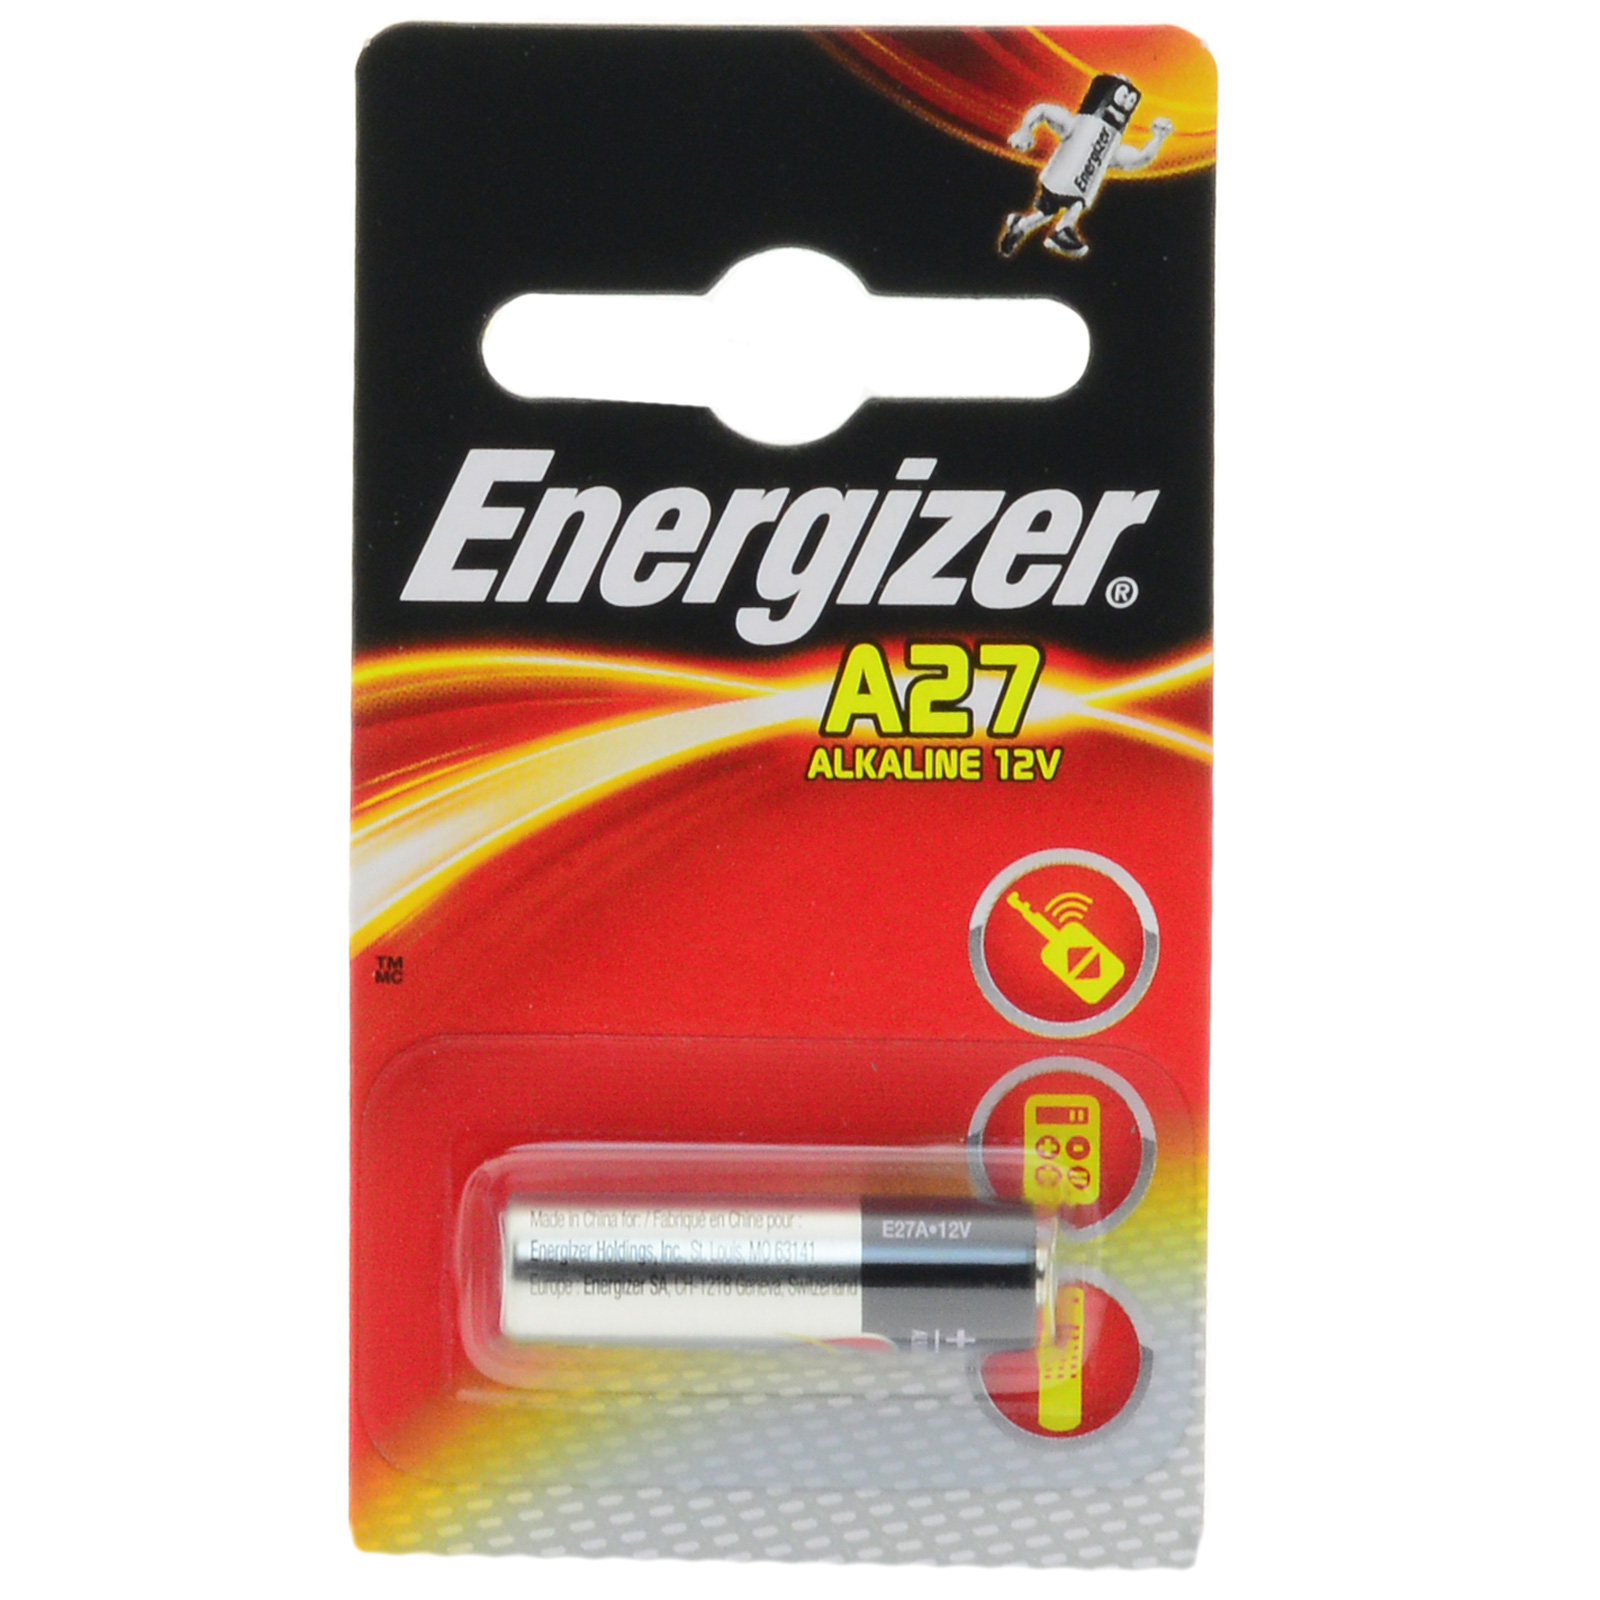 А27 12v. Элемент питания GP 27a (12v). Батарейка 27а 12v. Элемент питания Energizer а27 (2шт). Батарейка Energizer a23 Alkaline fsb1/10.